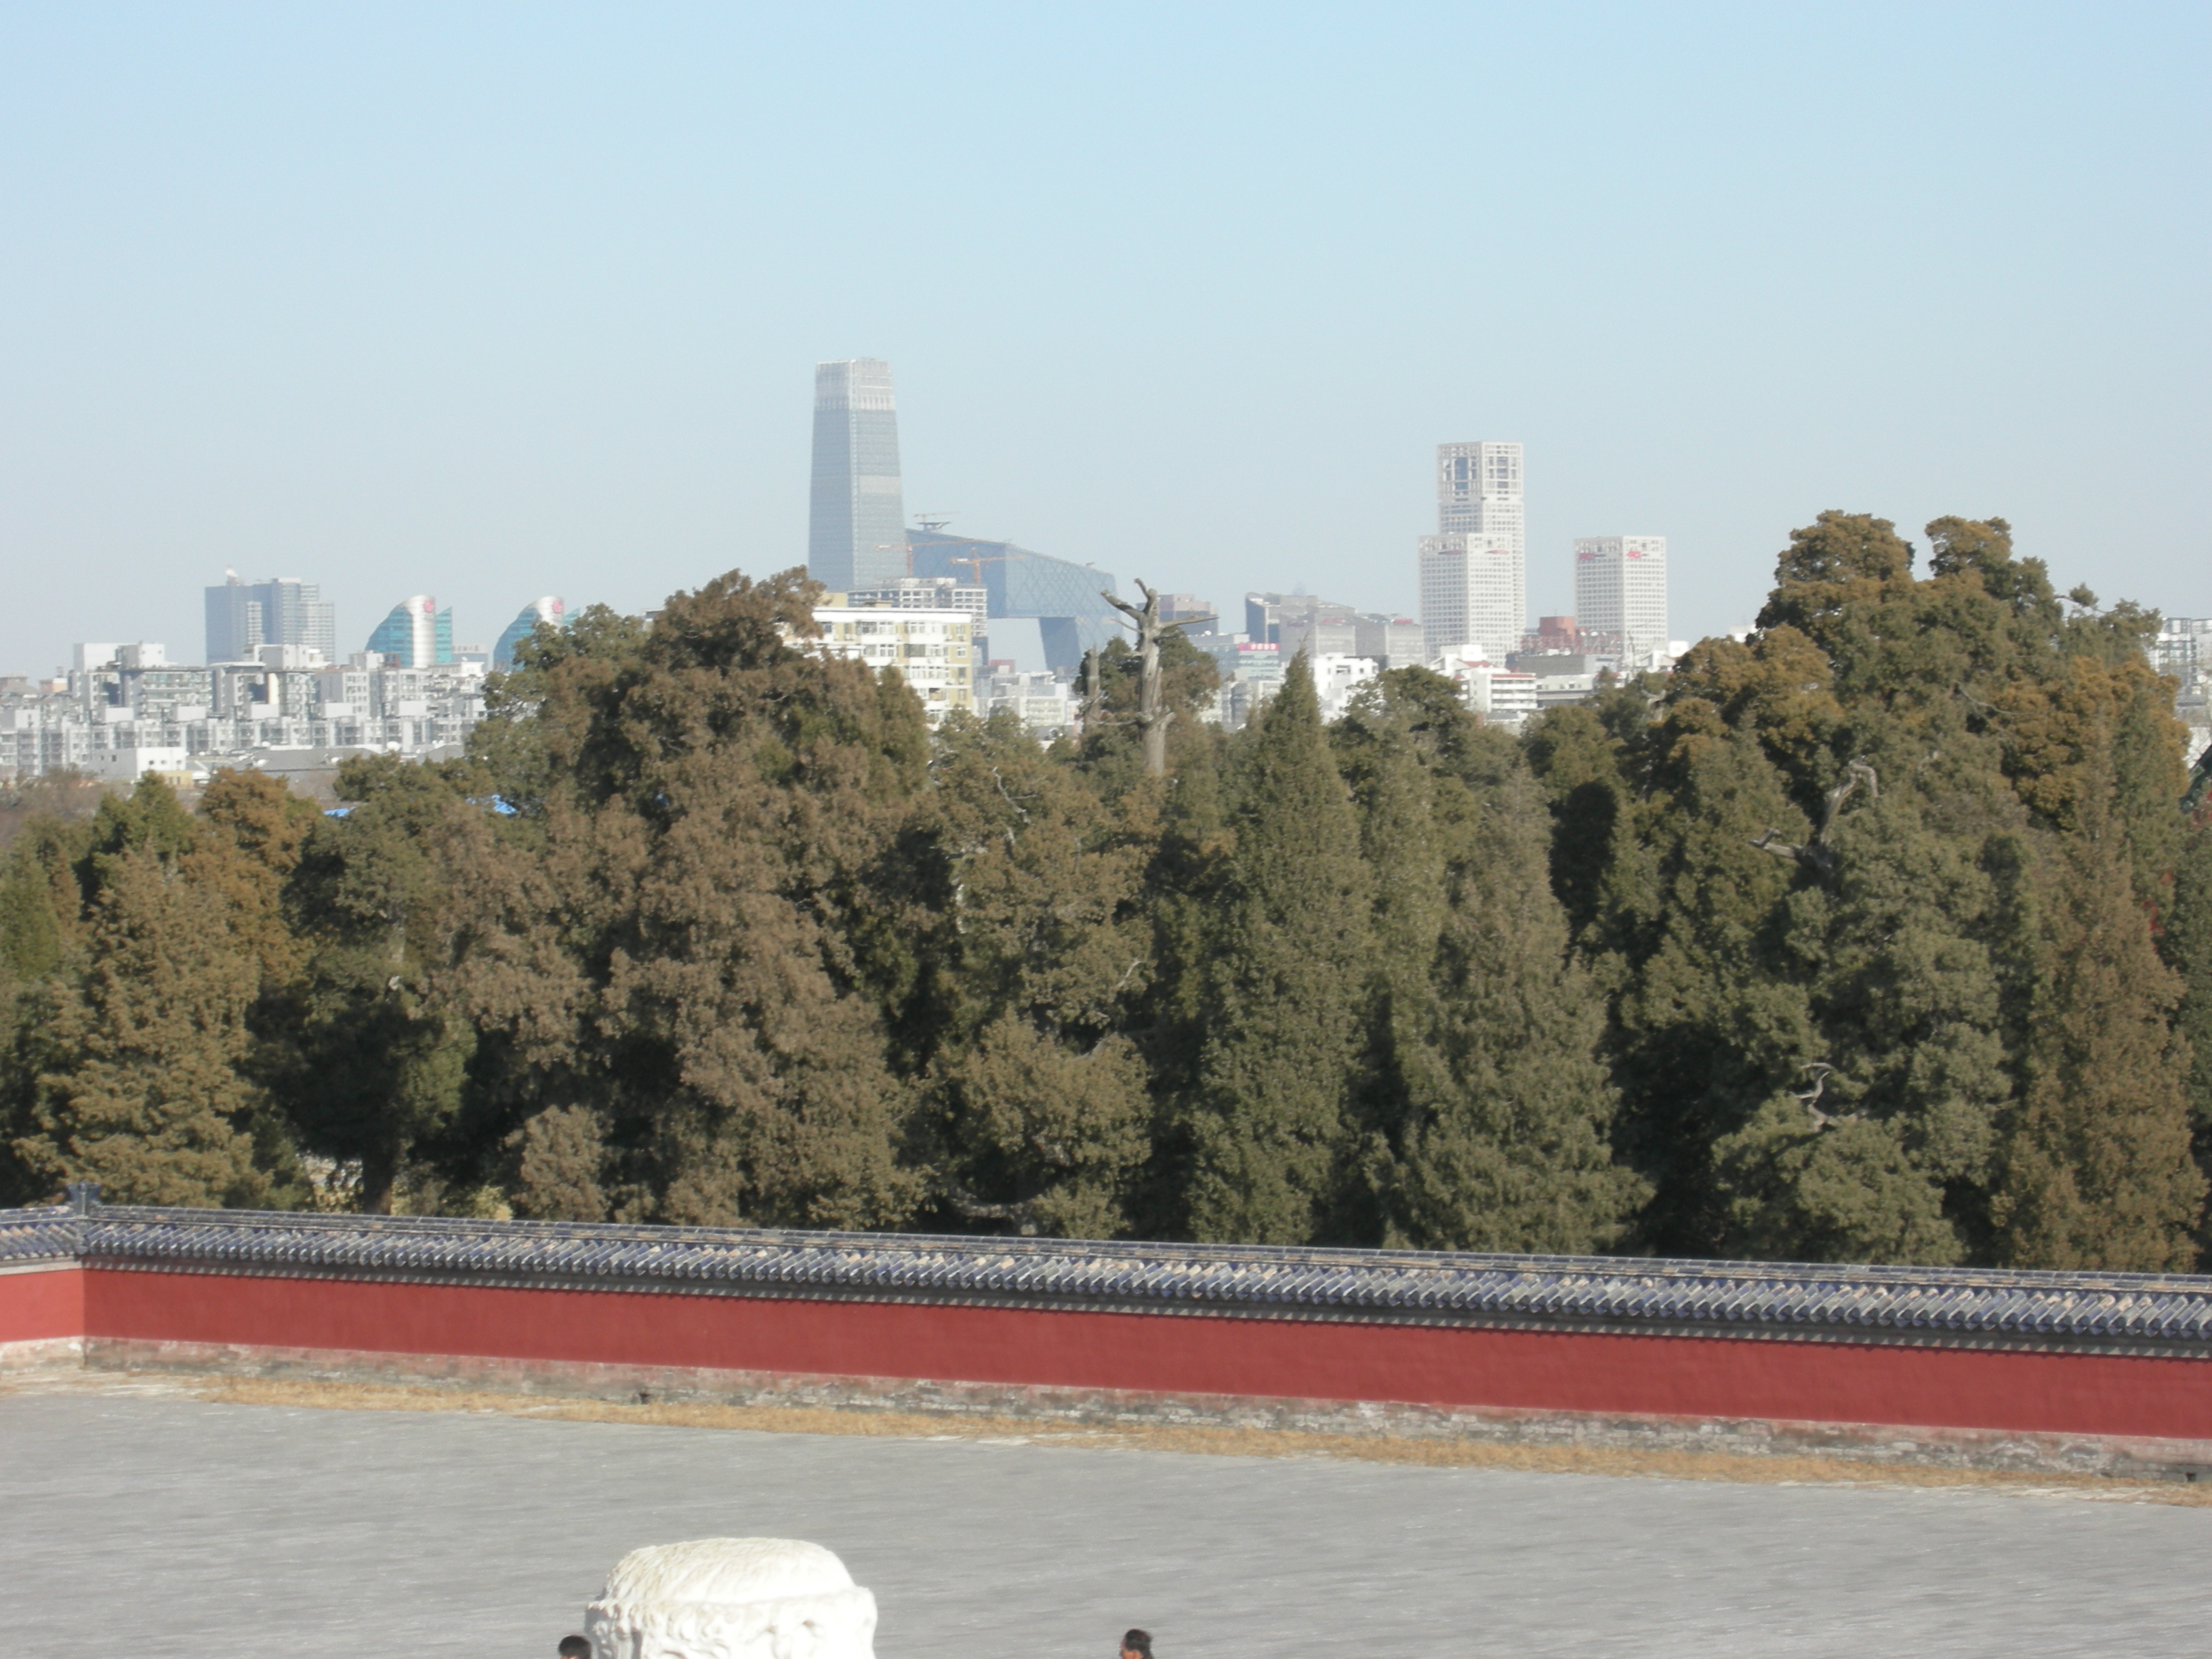 La vista verso i grattacieli del centro di Pechino